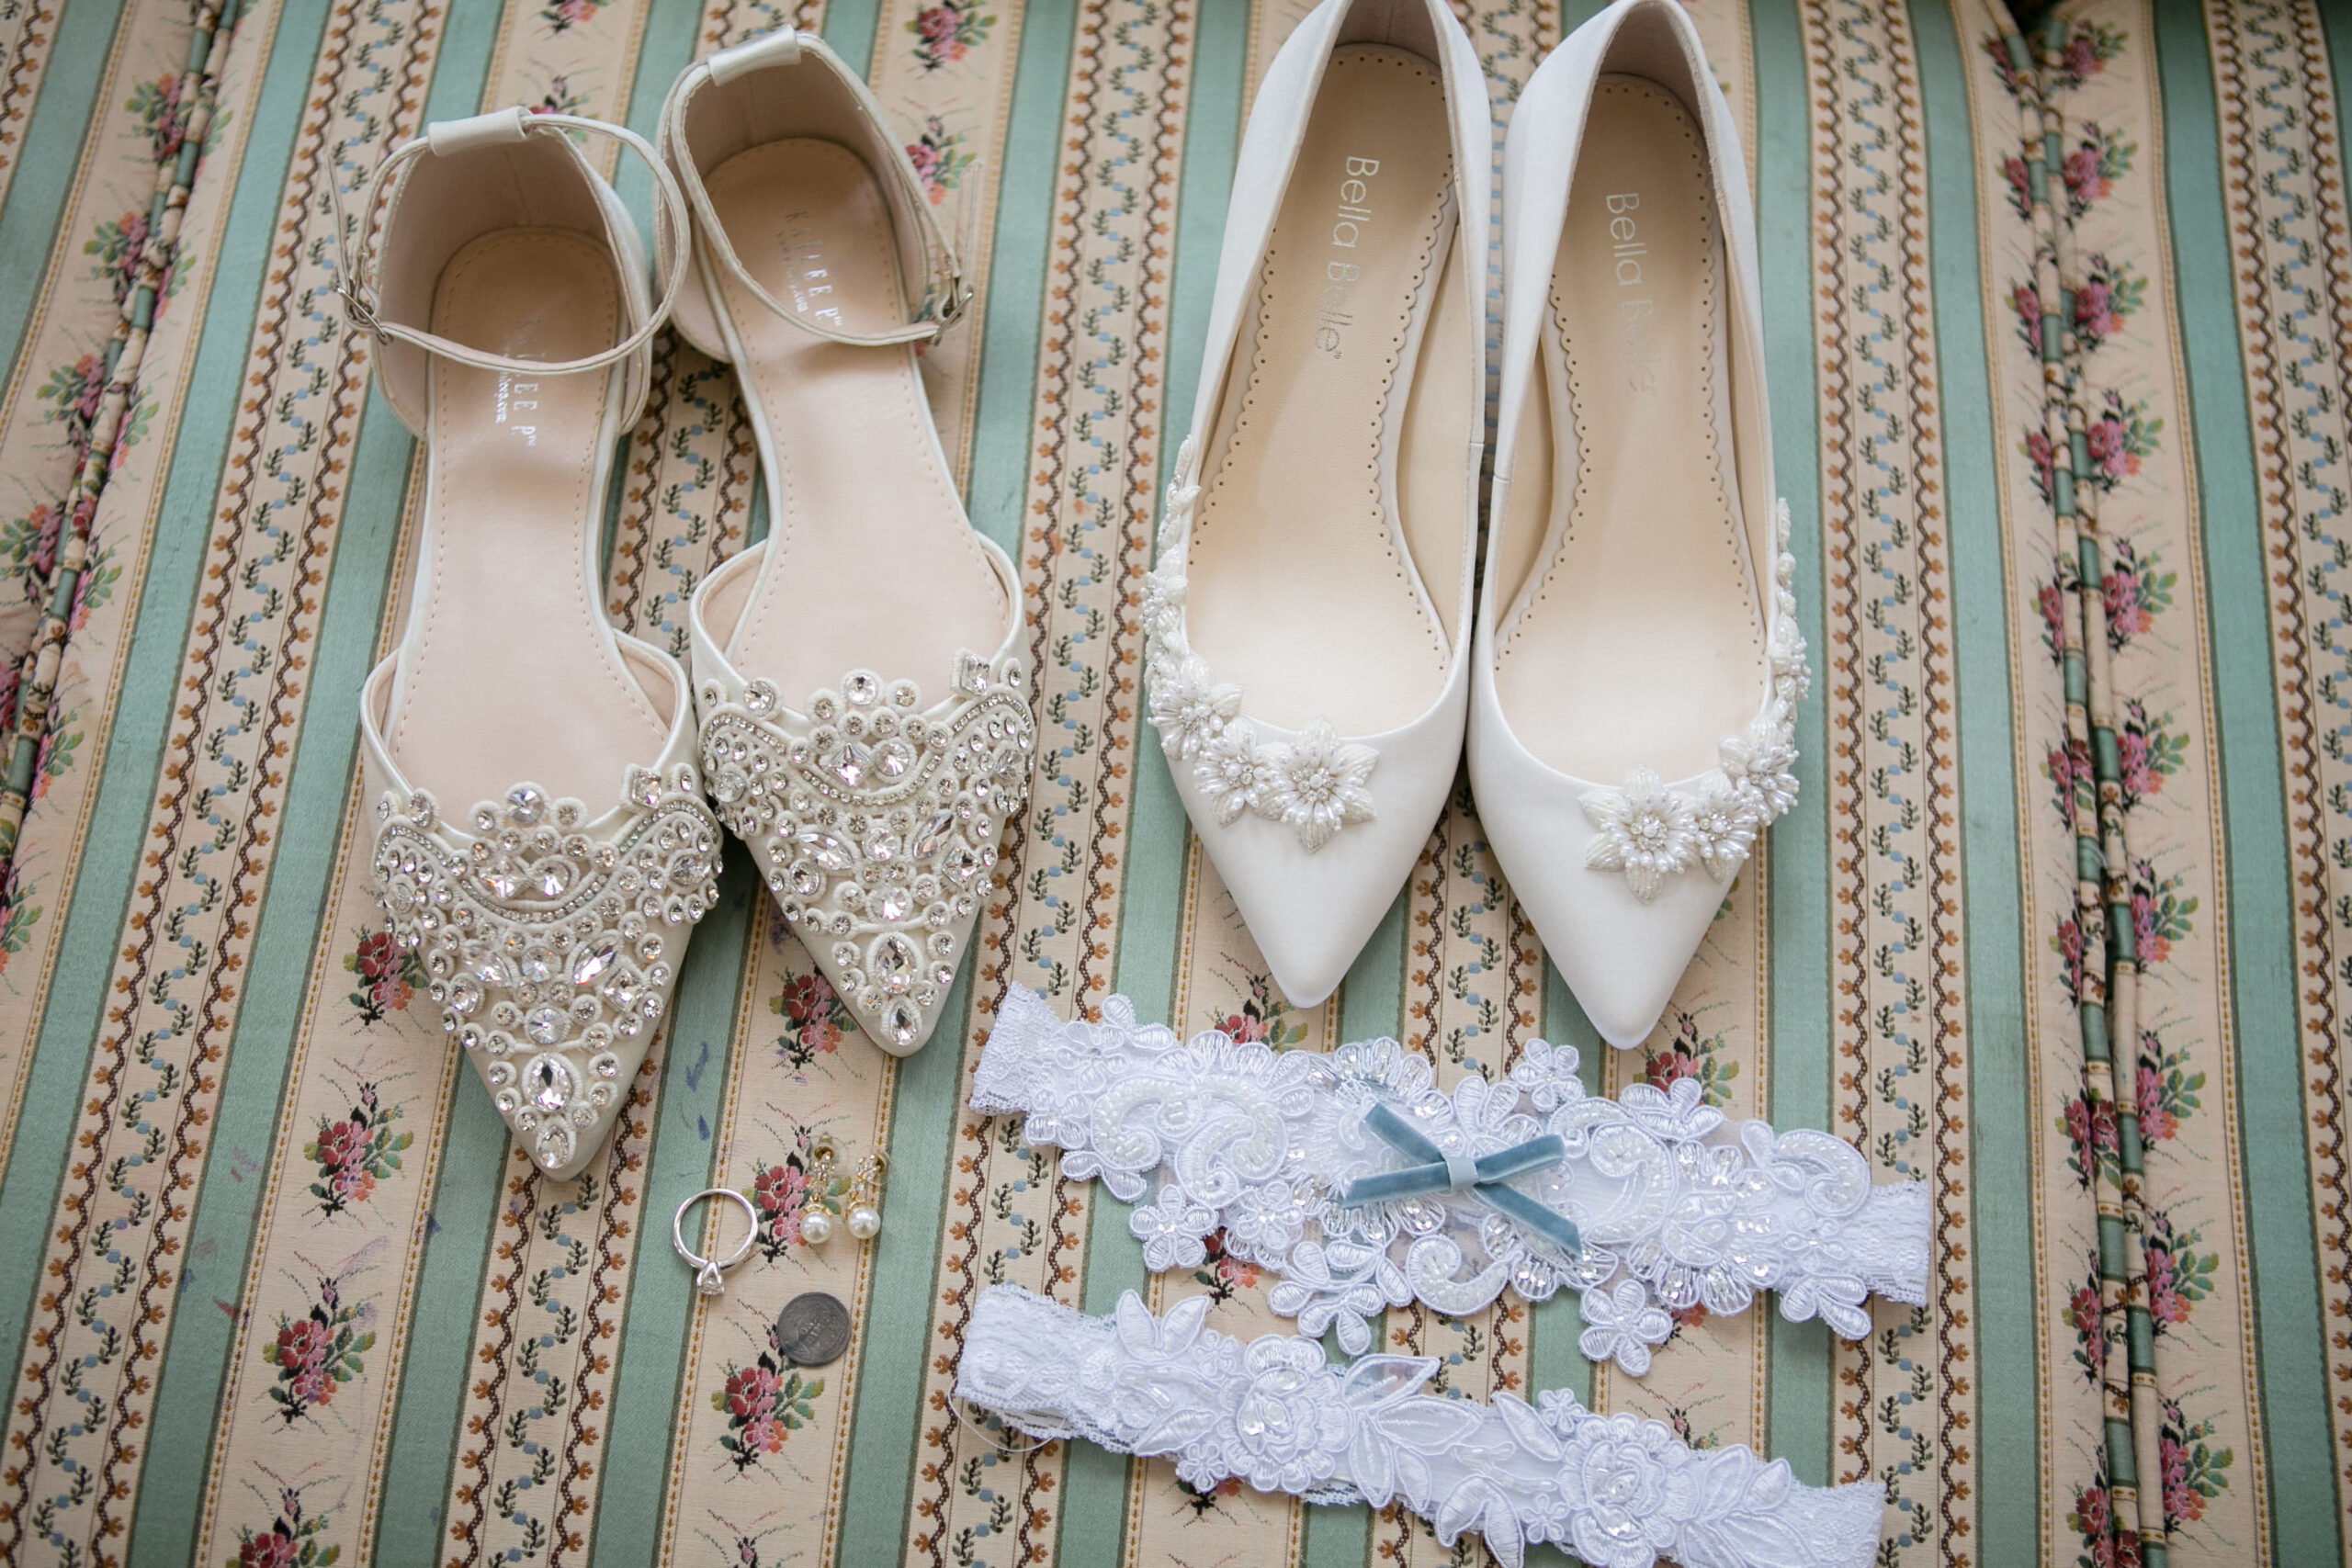 Classic White Ivory Vintage Lace Flower Wedding Shoe Inspiration